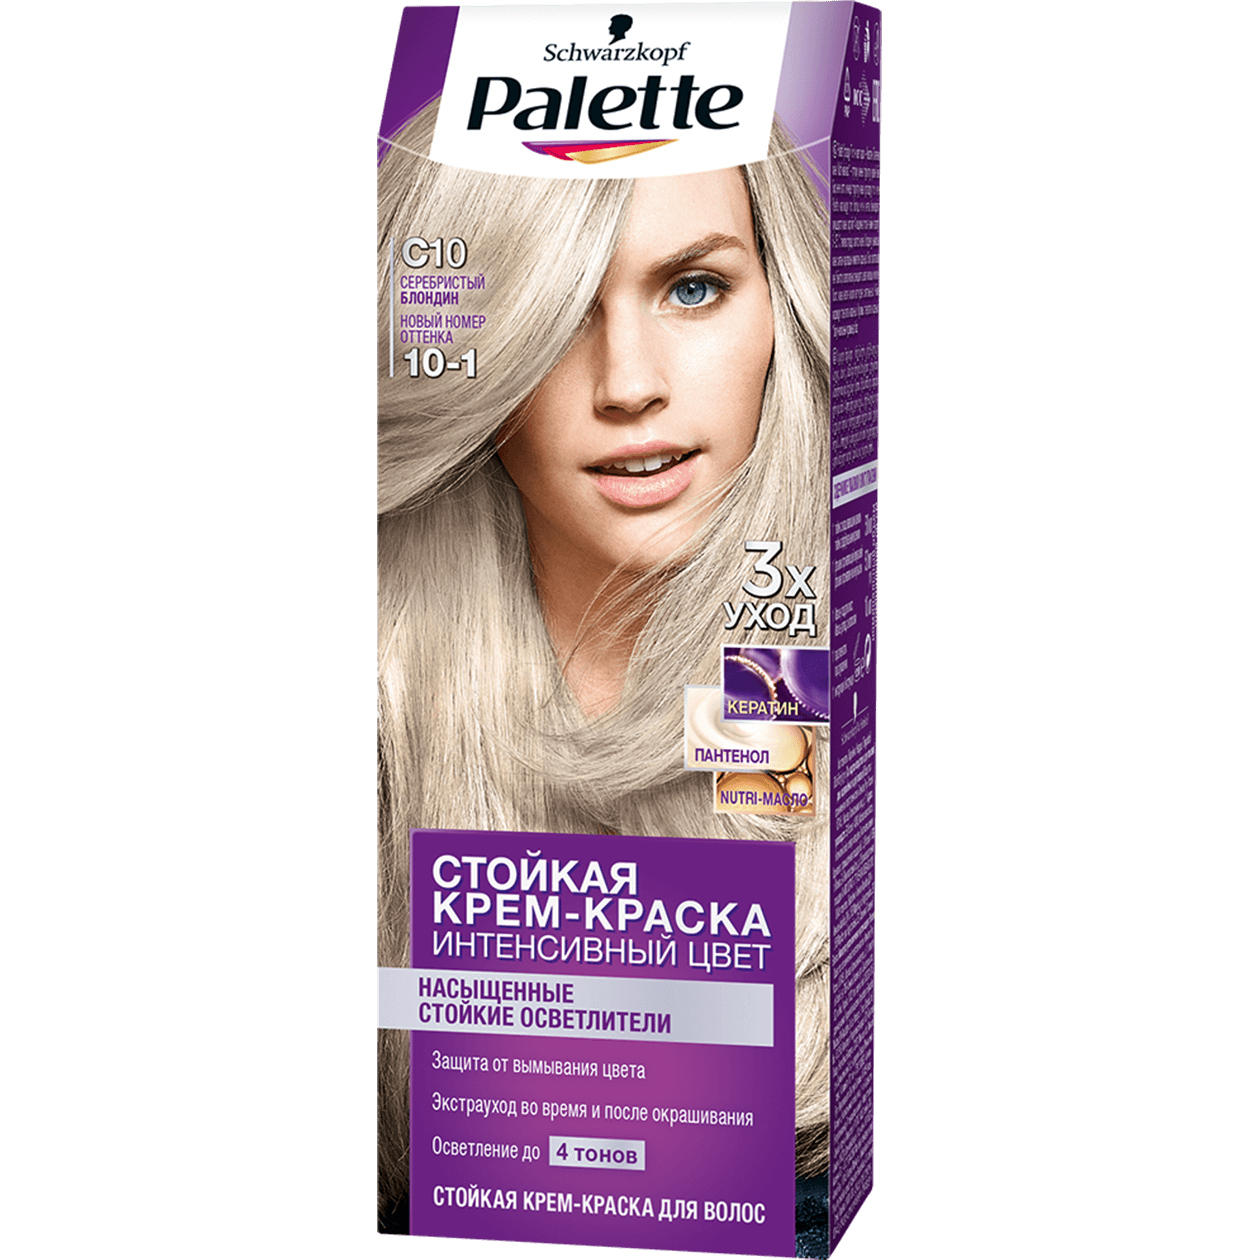 Крем-краска для волос Palette Интенсивный цвет 10-1, C10 Серебристый блондин 110 мл крем паста для волос моделирующая суперсильной фиксации 85 мл